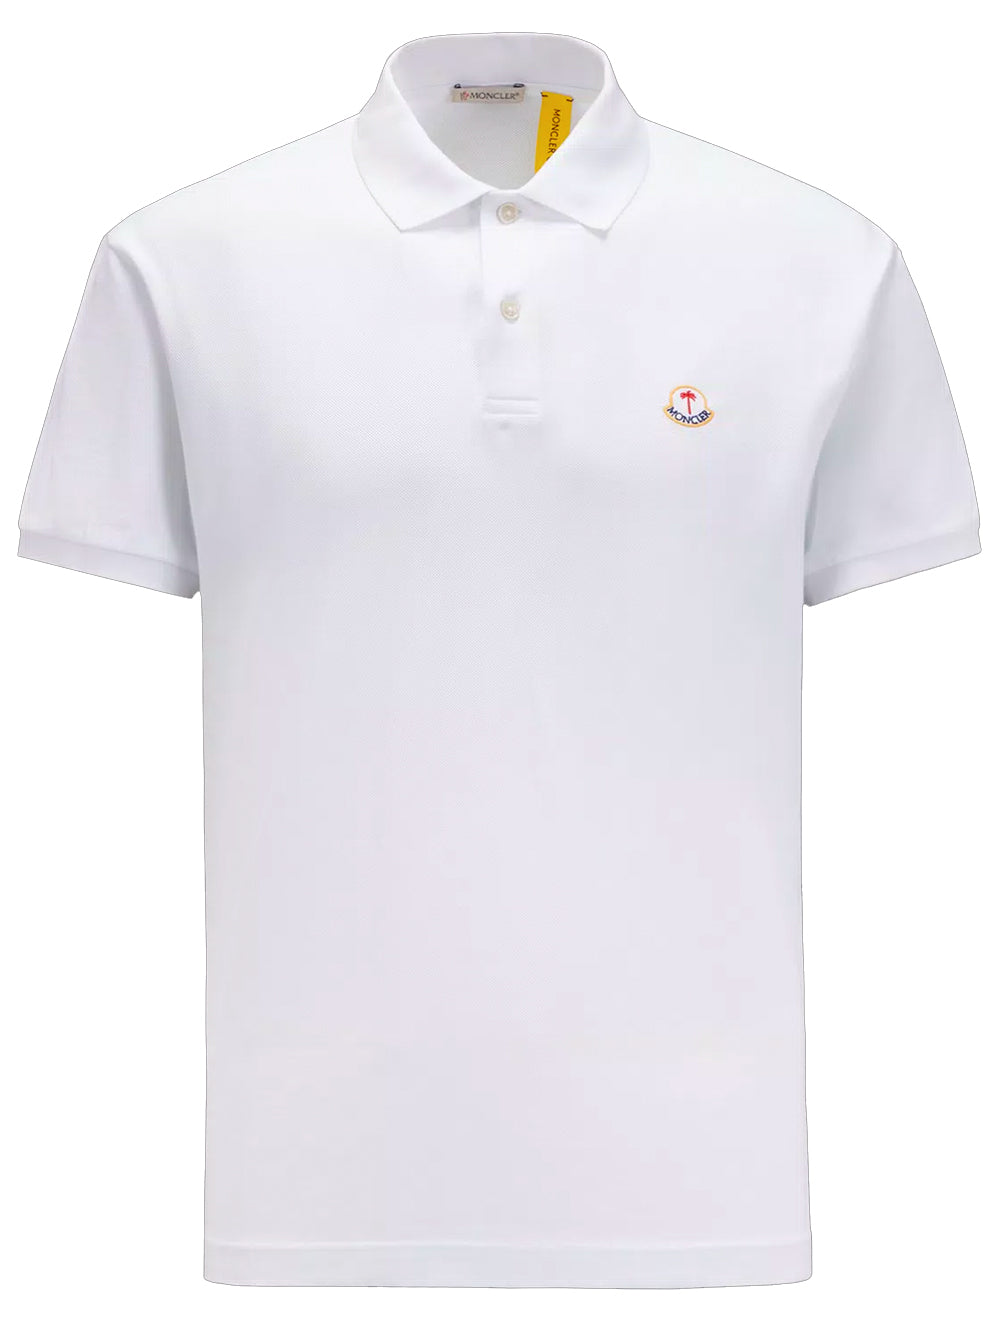 MONCLER GENIUS X 8 MONCLER PALM ANGELS MEN Logo Patch Polo Shirt White - MAISONDEFASHION.COM